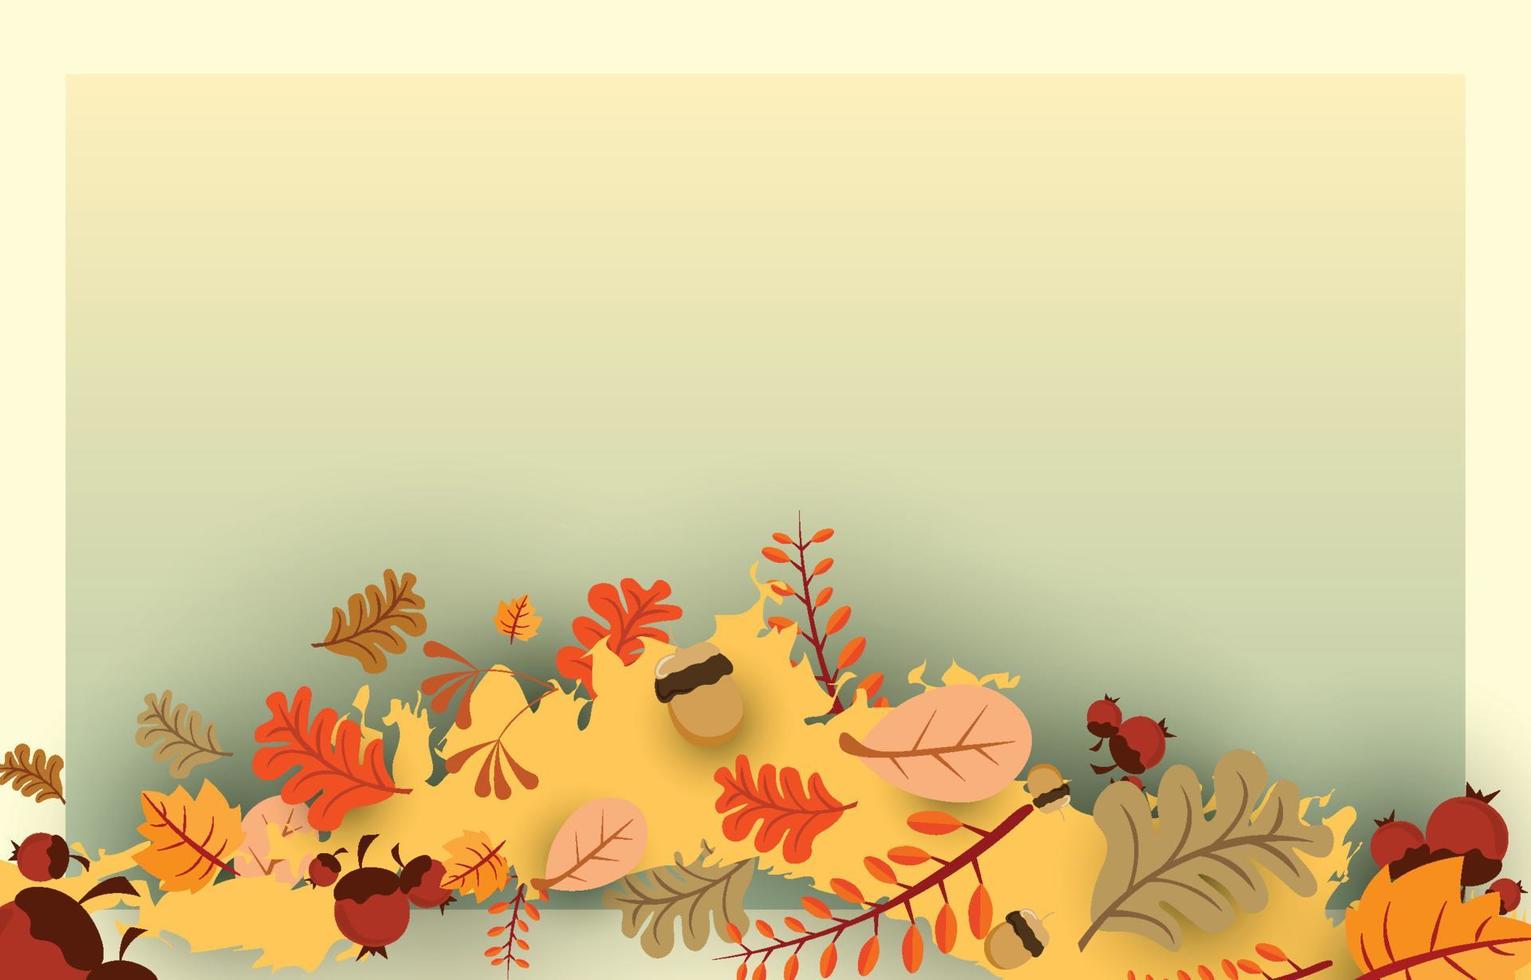 höstbakgrund med löv guldgul med fyrkantiga ramar och ledigt utrymme, höstkoncept, för tapeter, vykort, gratulationskort, webbsidor, banderoller, onlineförsäljning. vektor illustration